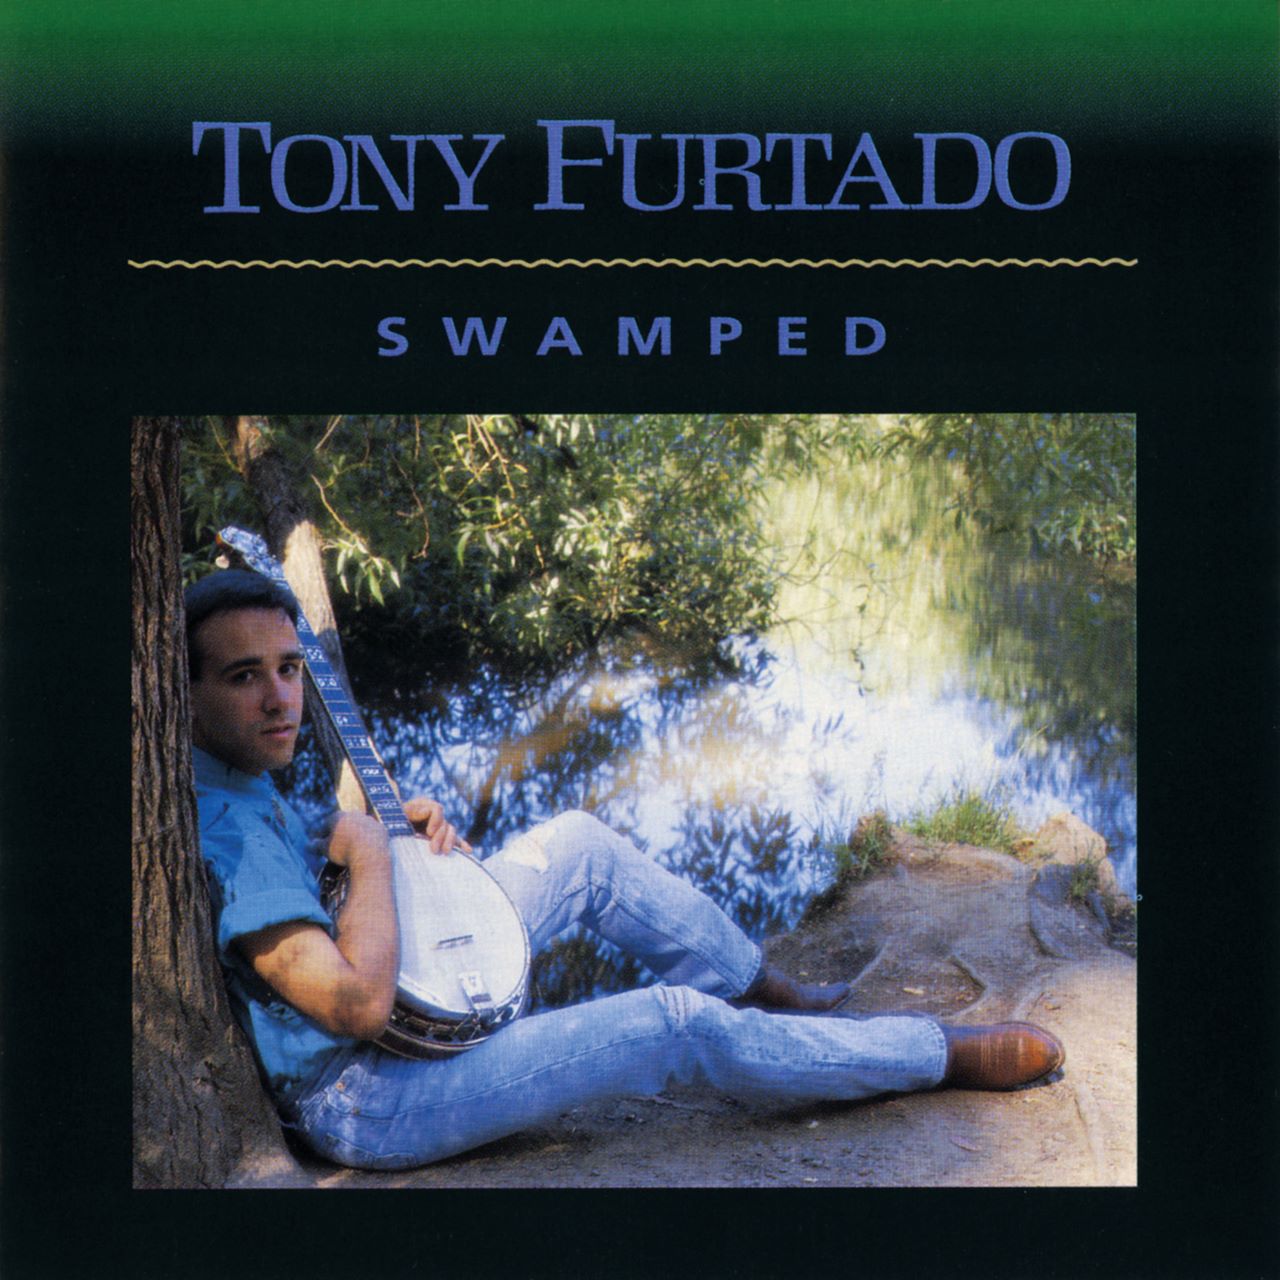 Tony Furtado - Swamped cover album